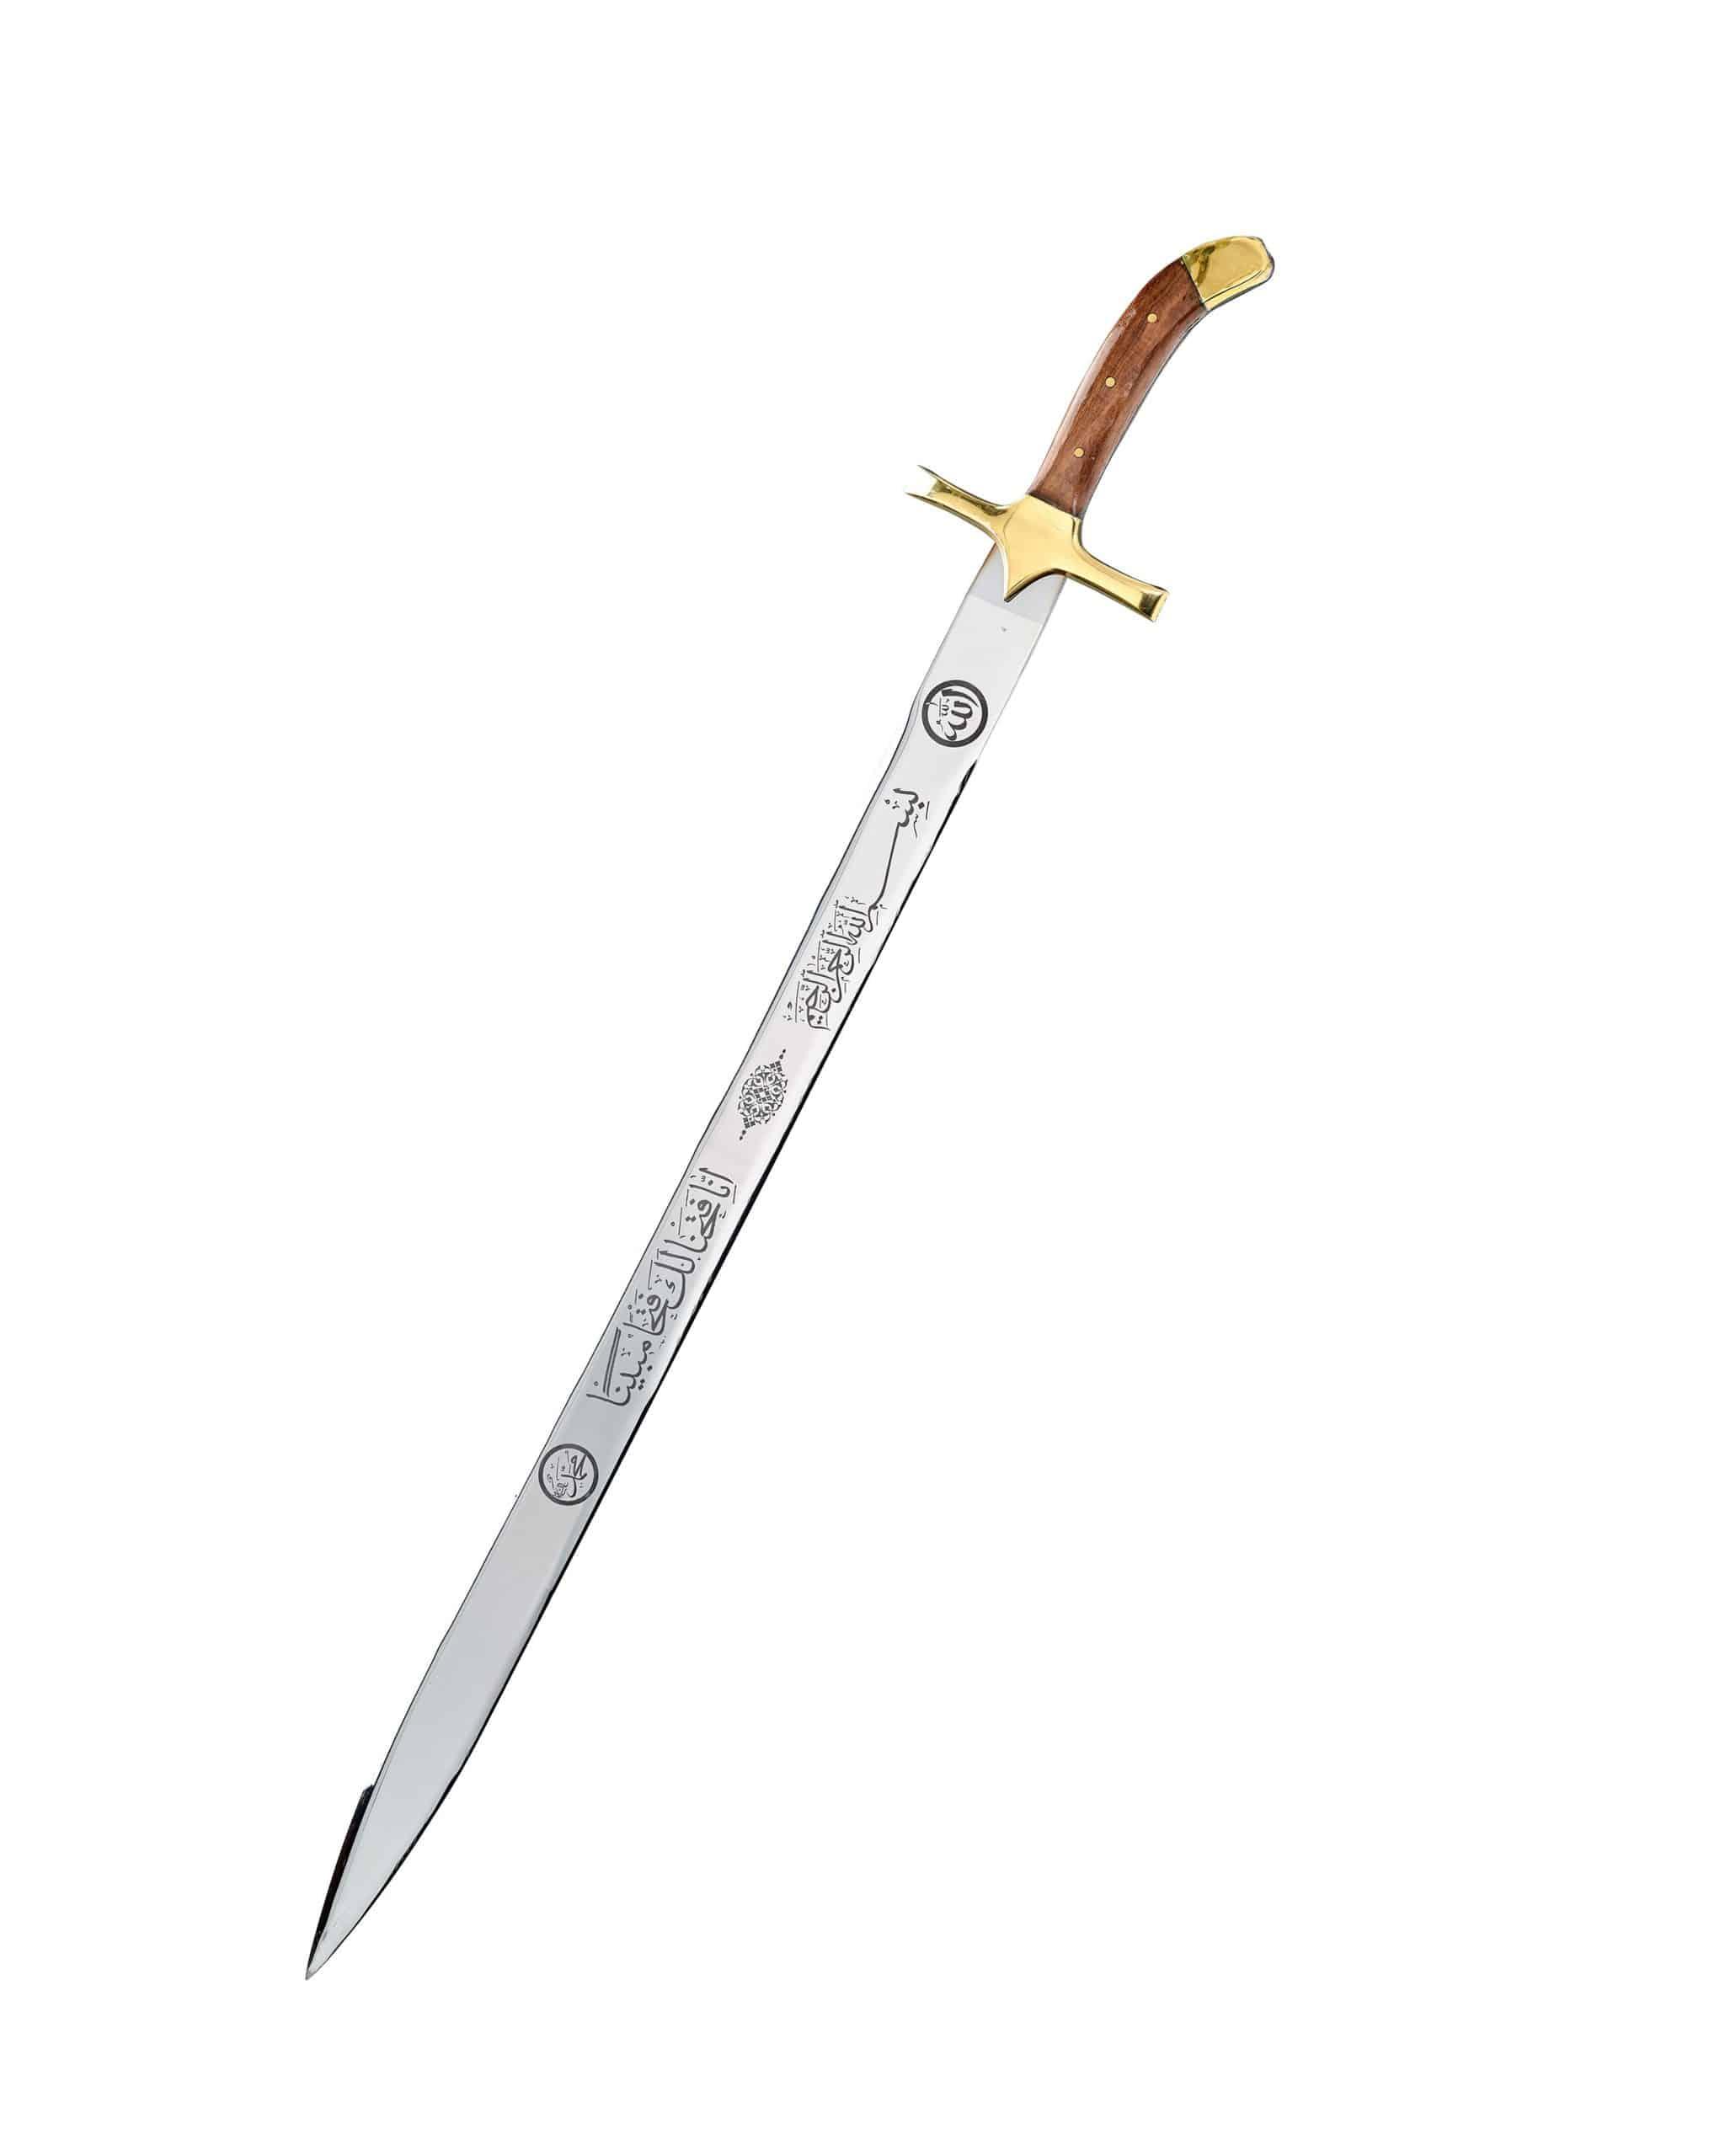 Proohet Muhammad replica swords (1)